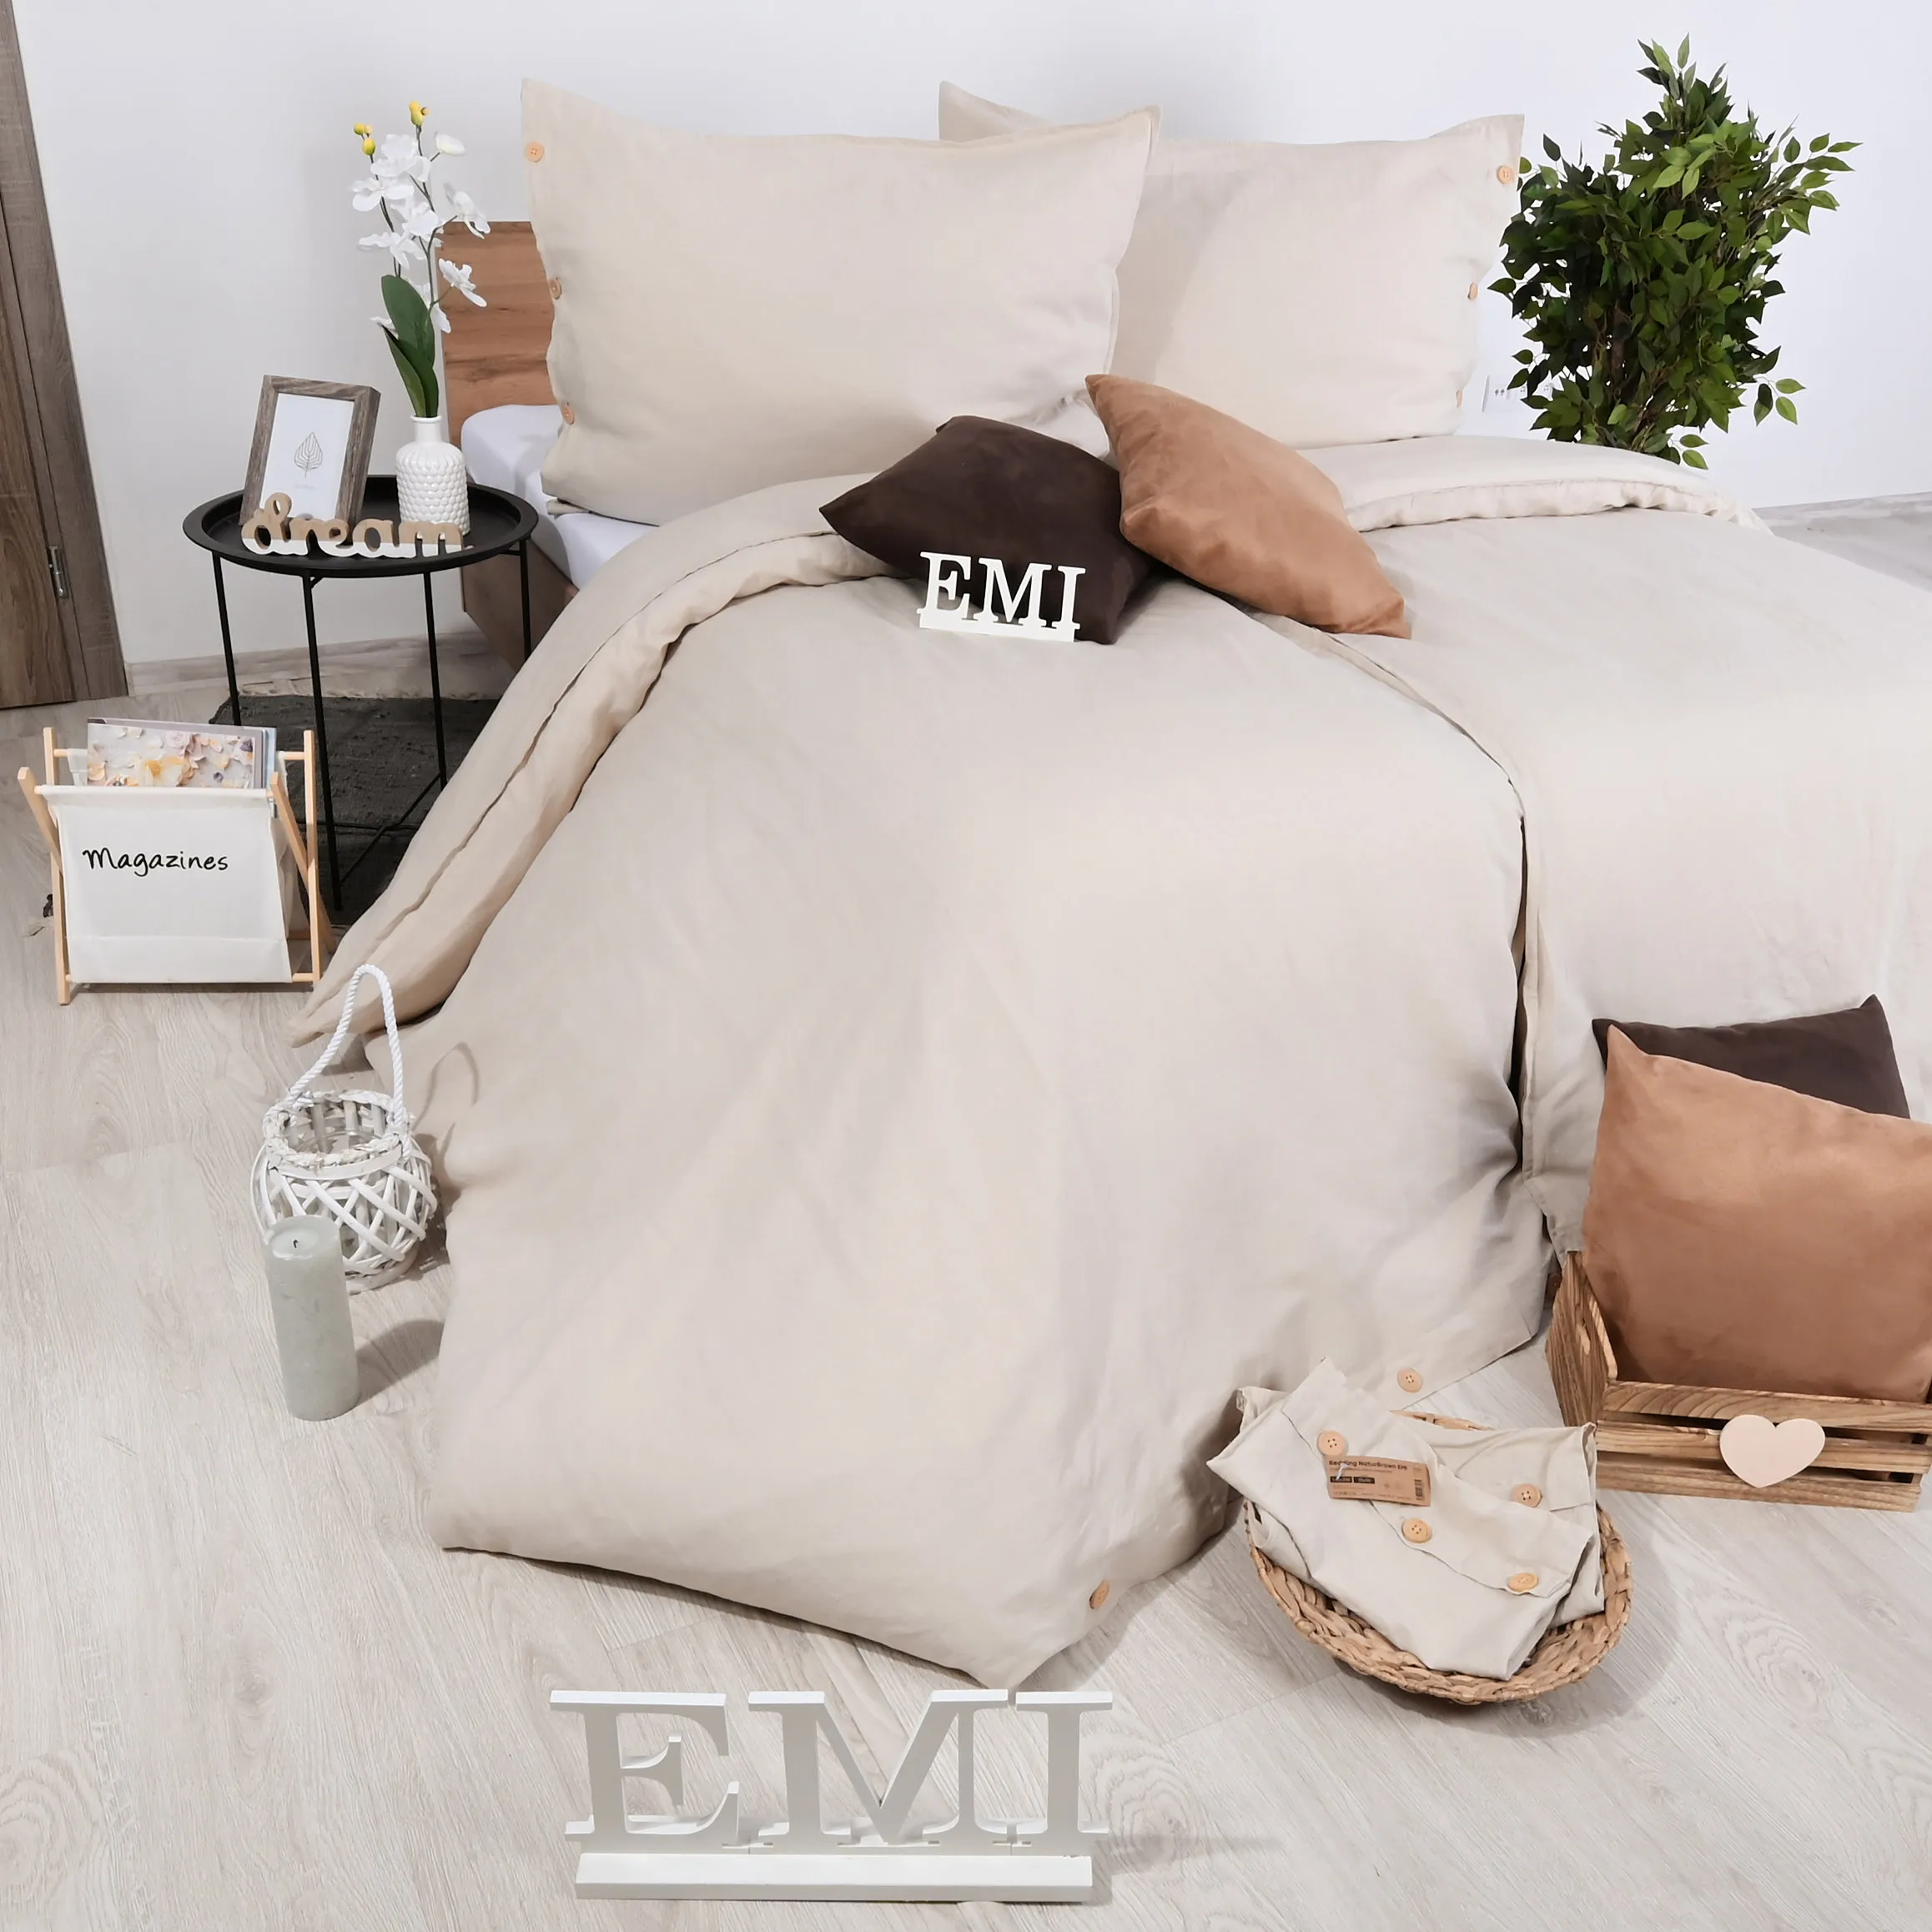 EMI Ľanové posteľné obliečky Natur hnedé 140x200+90x70 1×1 set, posteľné obliečky